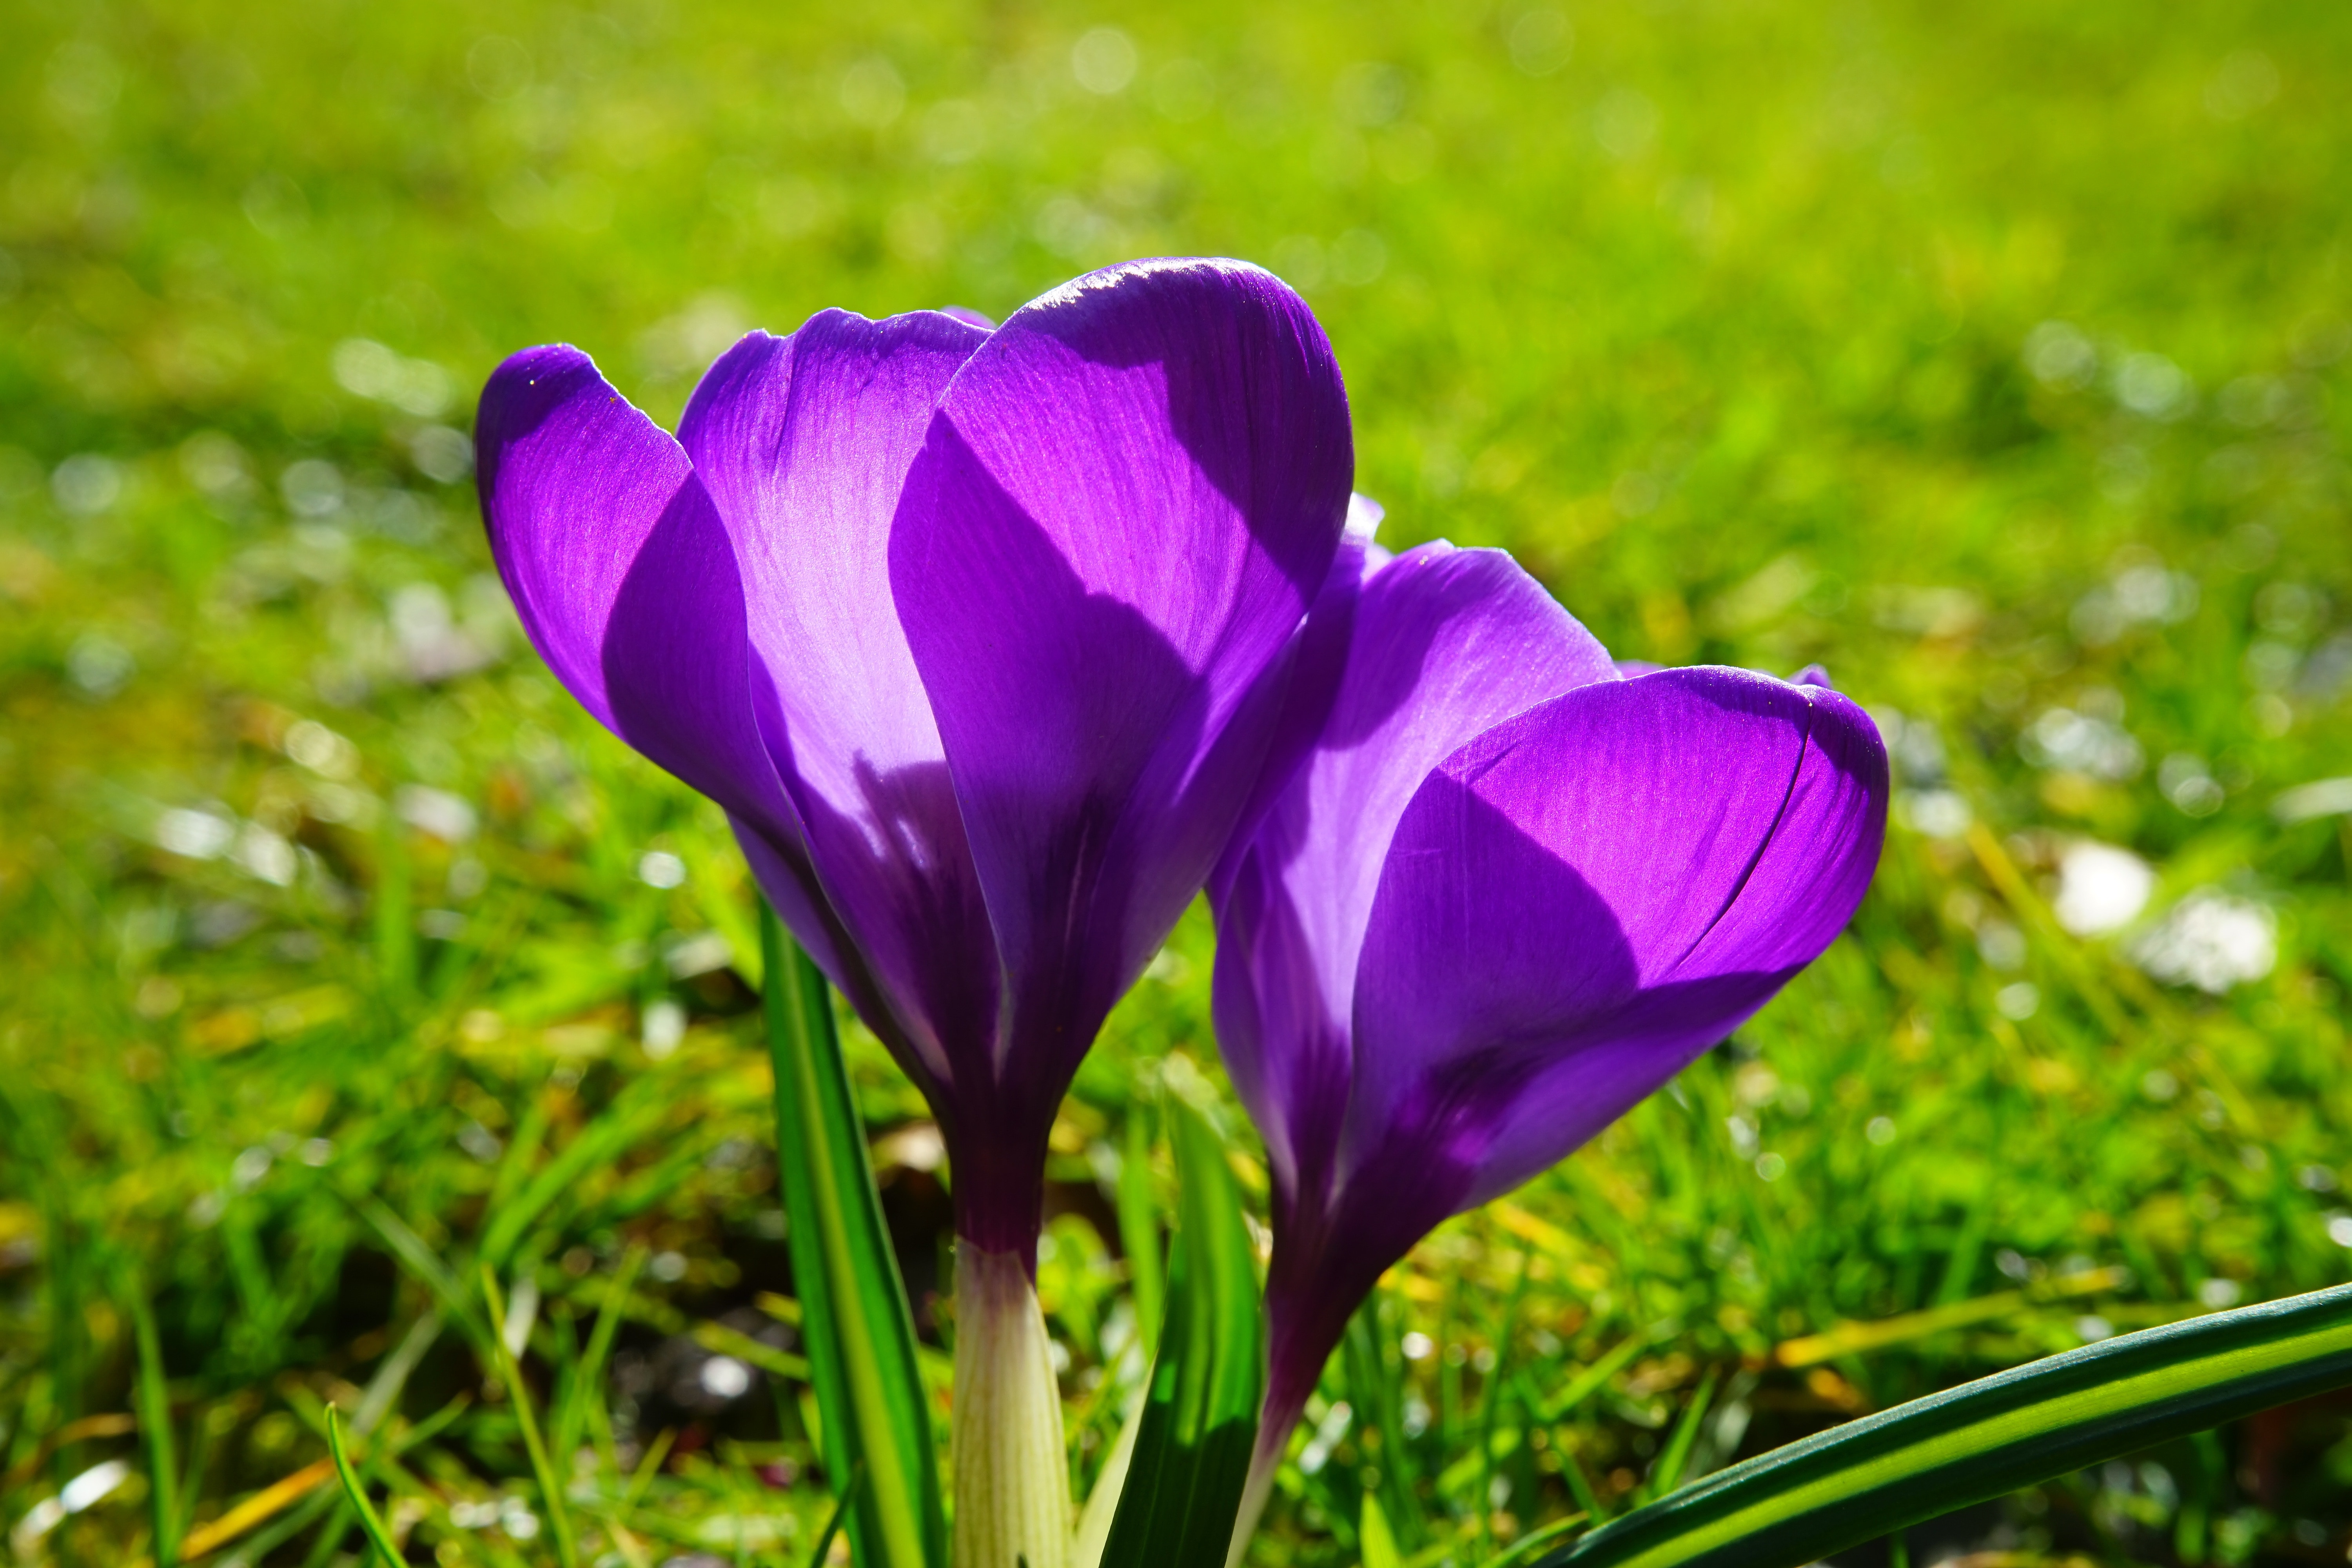 purple petaled flower on focus photo